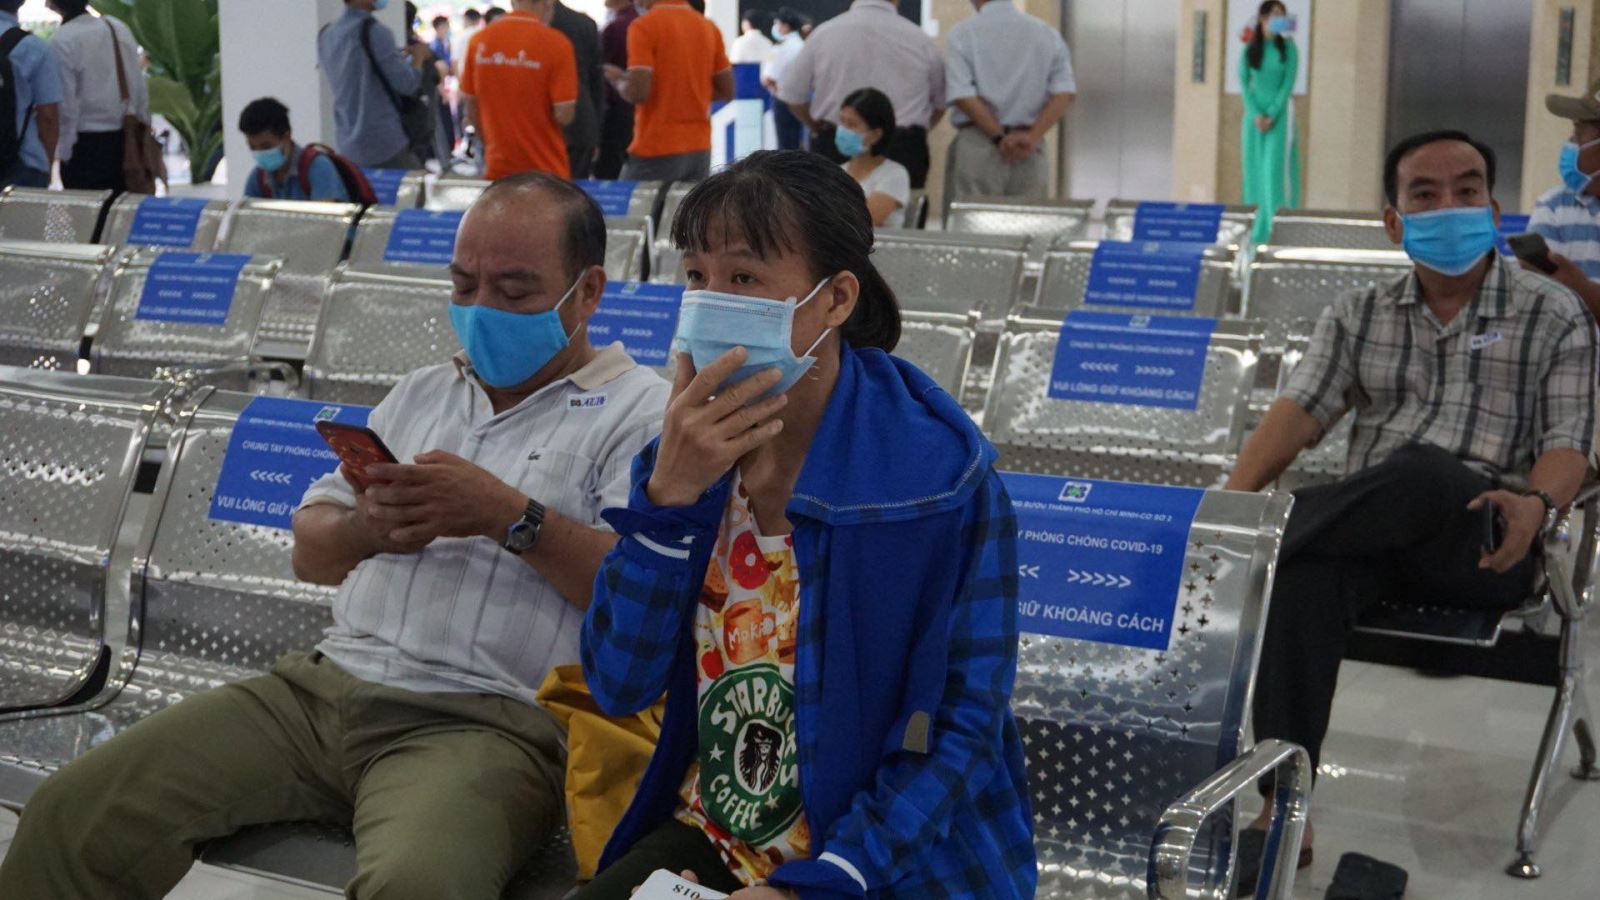 TP Hồ Chí Minh: 131 bác sĩ tư vấn khám sức khỏe miễn phí qua điện thoại giữa đại dịch - Ảnh 1.